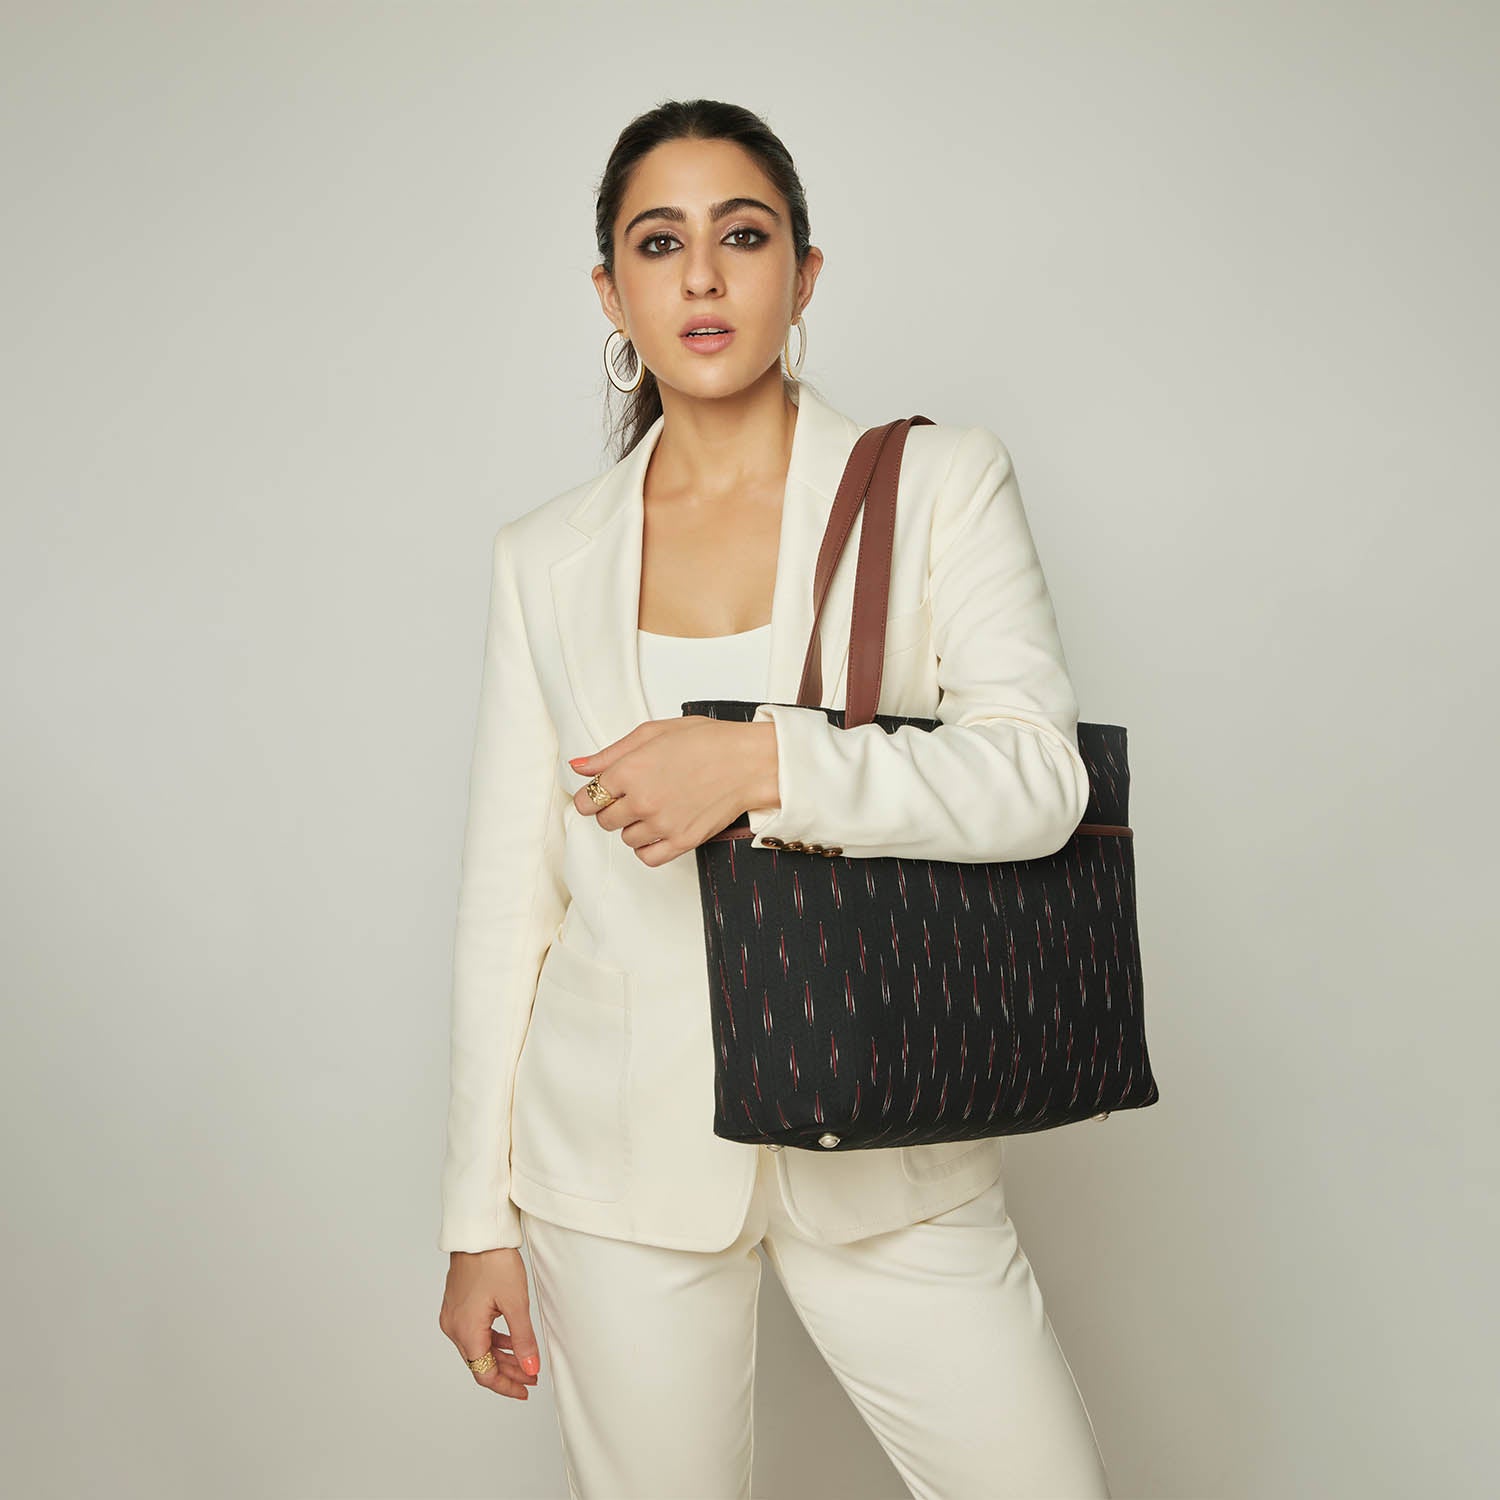 Buy Tote Bag for Women Geometric Lattice Handbag Girls Shoulder Bag  Luminous Purse Online at desertcartNorway